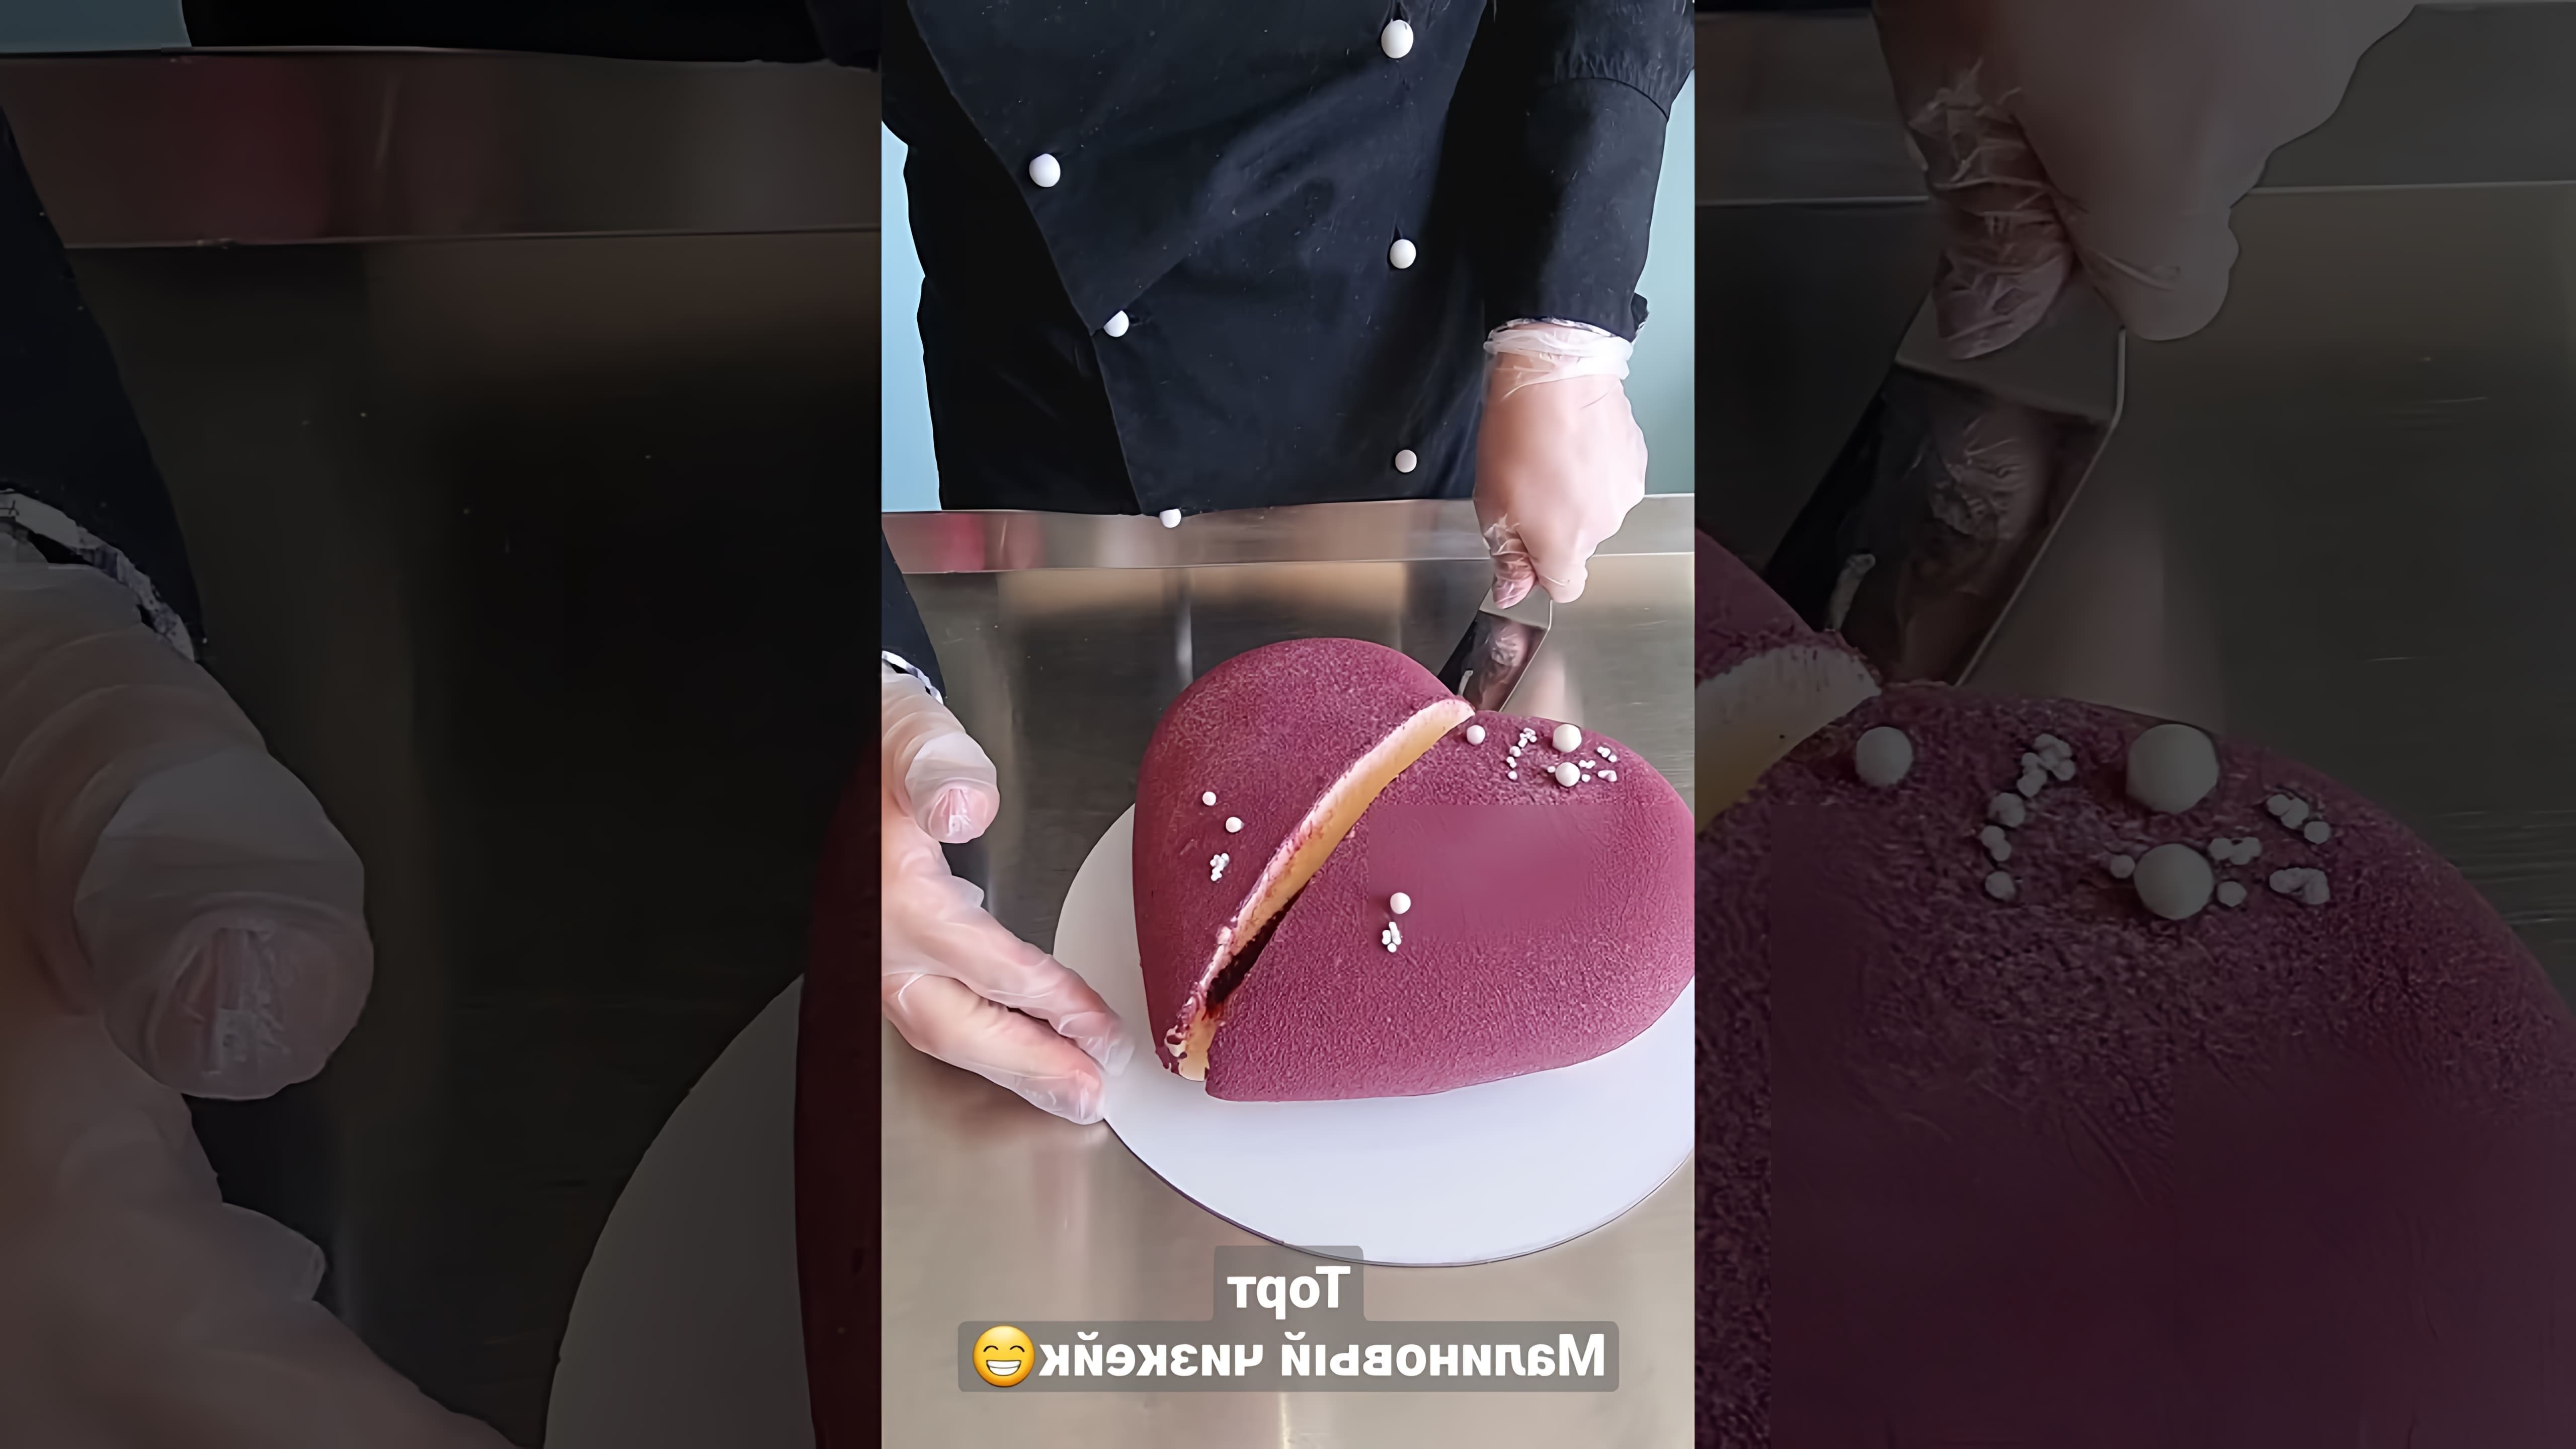 В этом видео-ролике мы увидим, как происходит процесс разрезания муссовых тортов